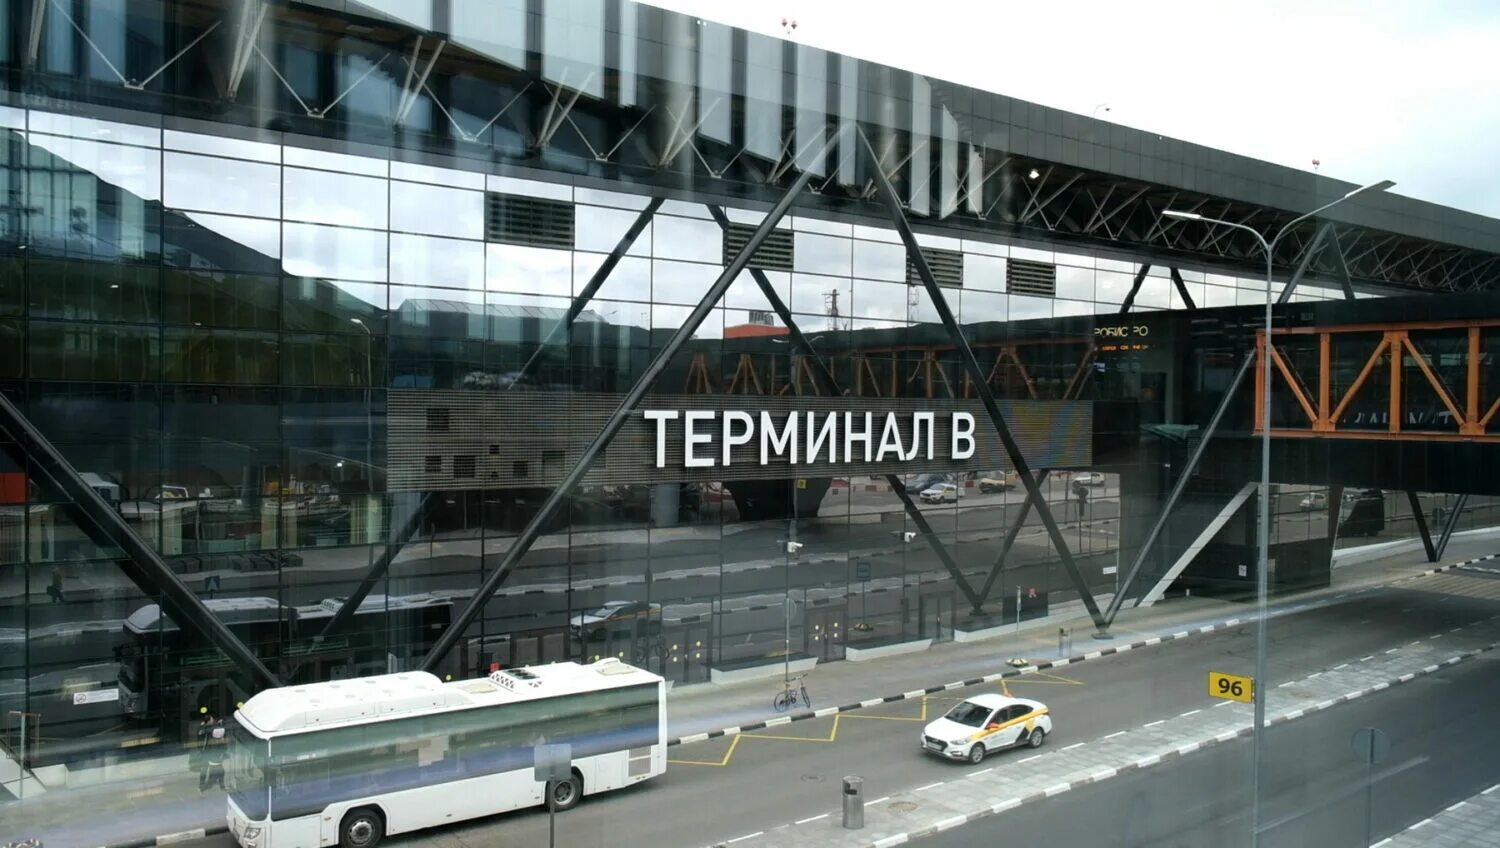 ЖД терминал в Шереметьево. Шереметьево терминал b. Шереметьево новый терминал. Шереметьево Аэроэкспресс Железнодорожный терминал. Шереметьево терминал b аэроэкспресс